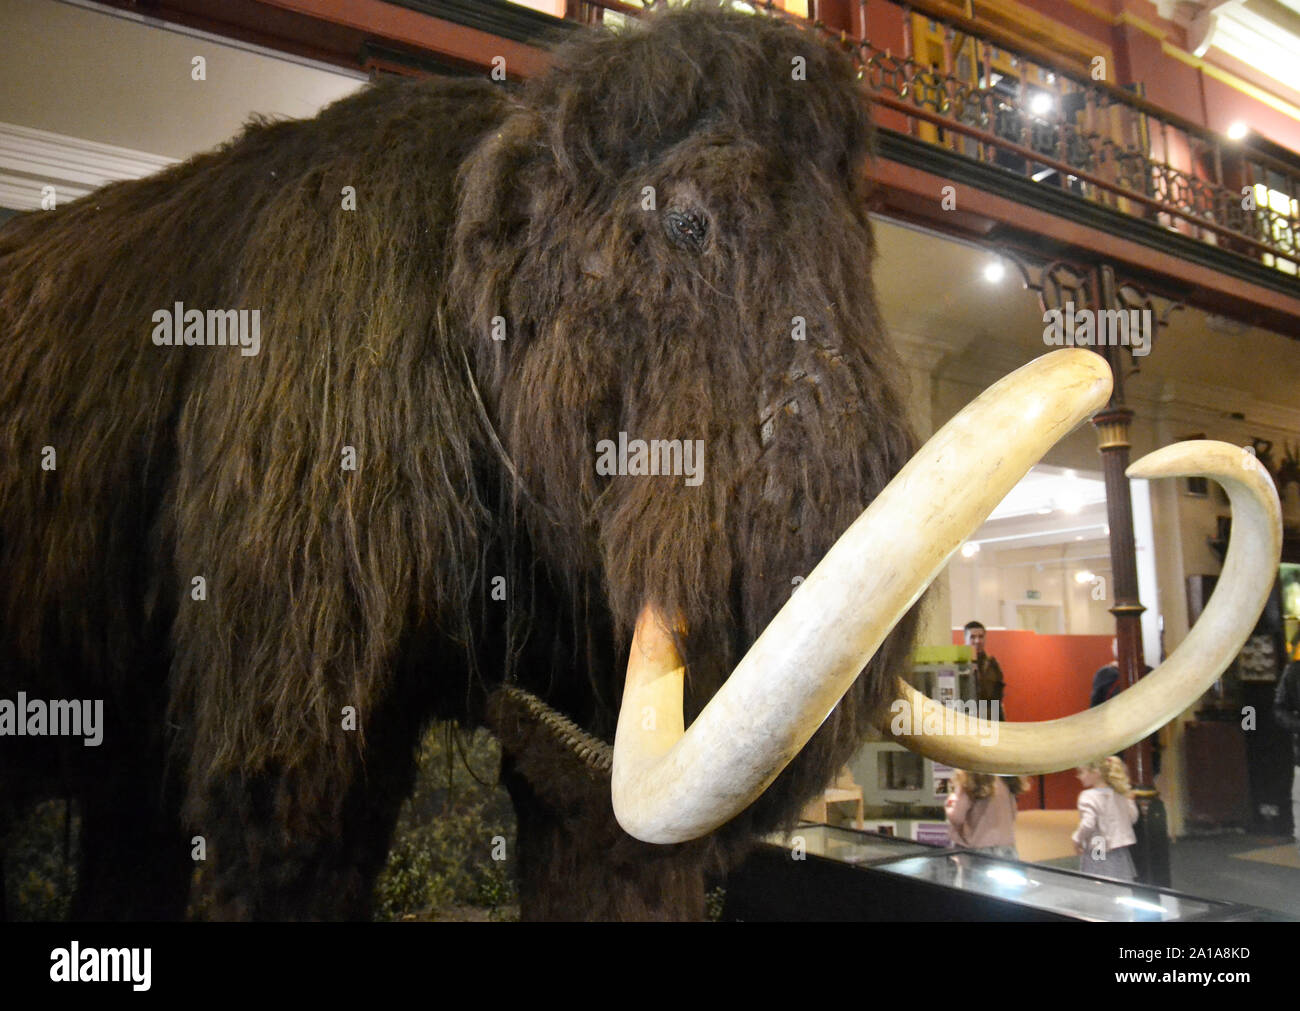 Eine wollige Mammut in der Viktorianischen Natural History Museum Galerie, Ipswich, Ipswich, Suffolk, Großbritannien. Stockfoto